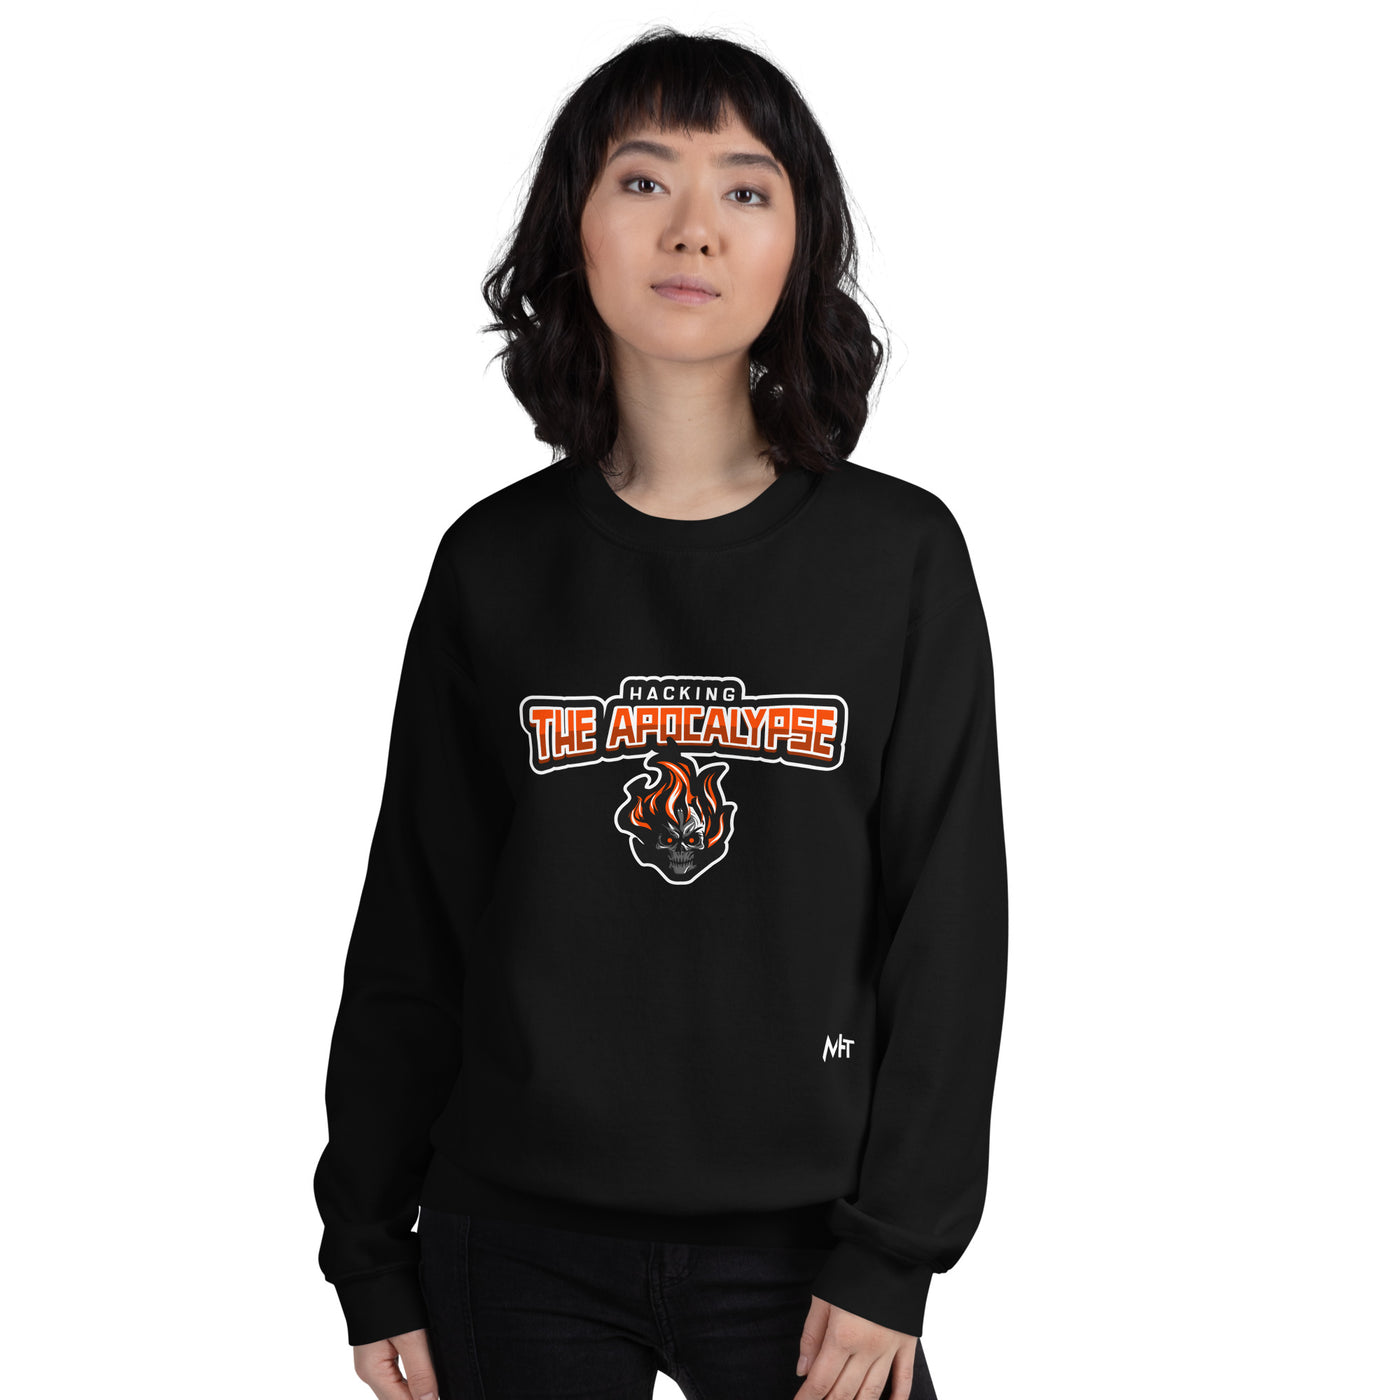 Hacking the Apocalypse V1 - Unisex Sweatshirt